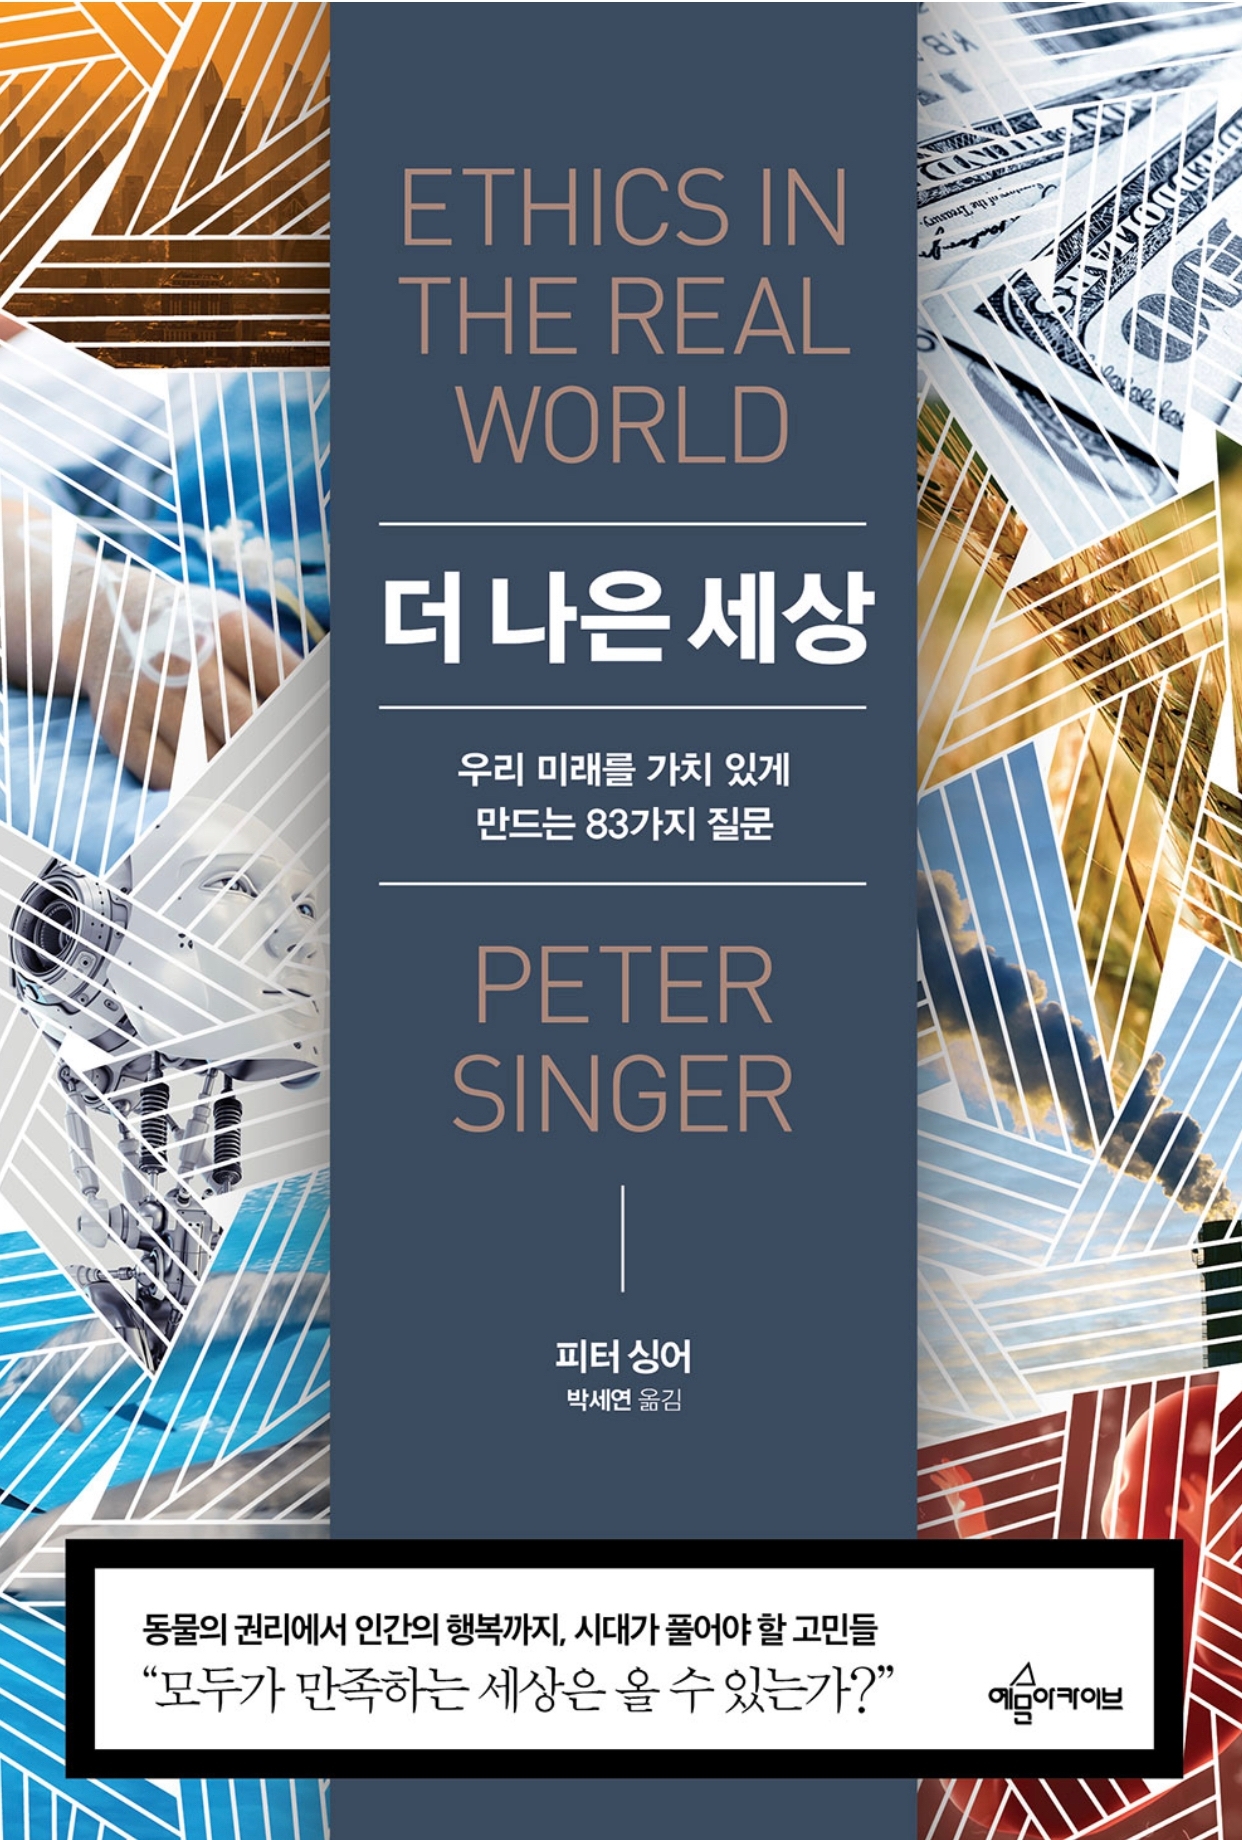 더 나은 세상(피터 싱어, 2017)